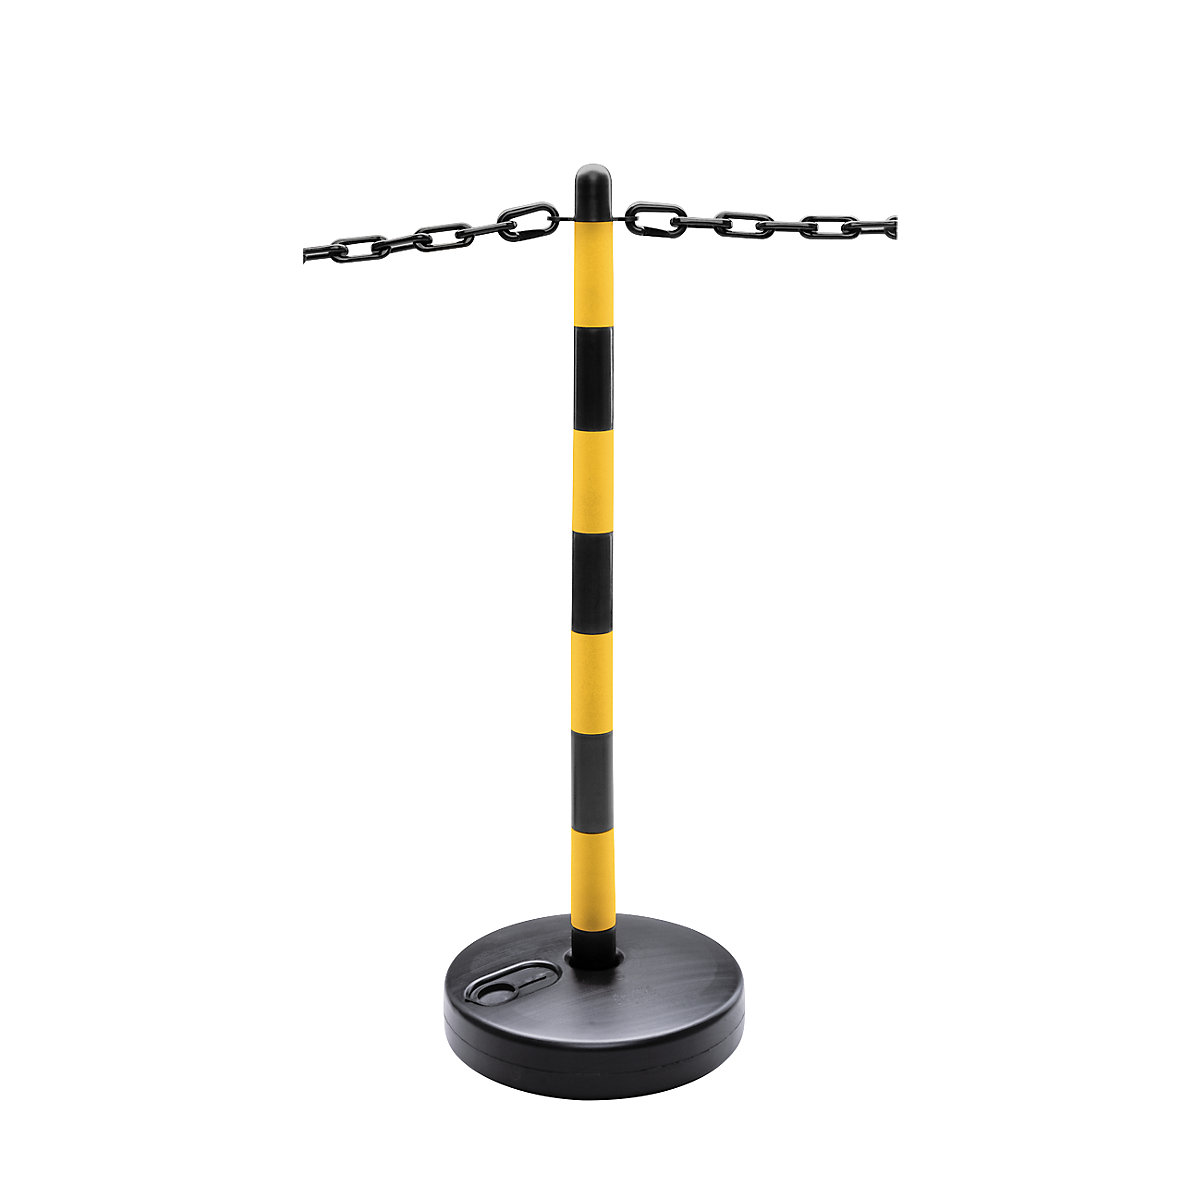 Juego de postes para cadenas, pata de plástico redonda, rellenable, 6 postes, cadena de 10 m, en negro y amarillo